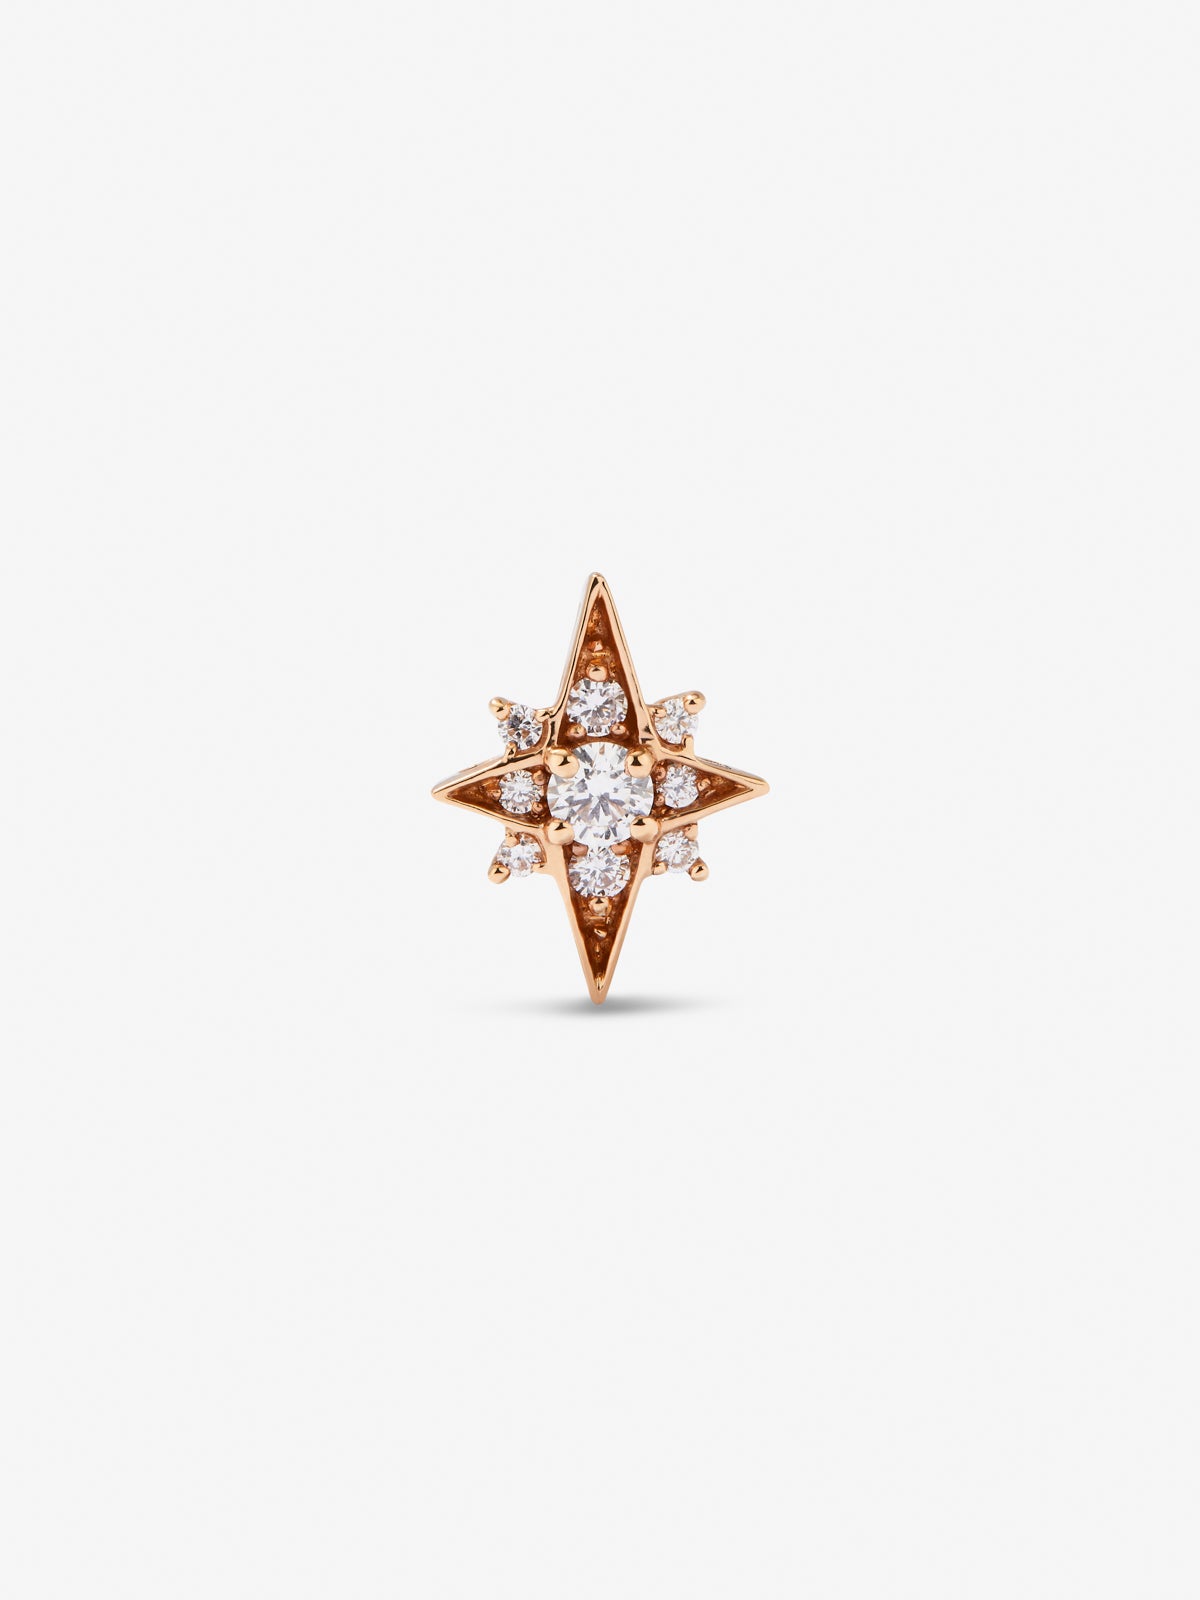 Pendiente individual de oro rosa de 18K con 9 diamantes en talla brillante con un total de 0,09 con forma de estrella